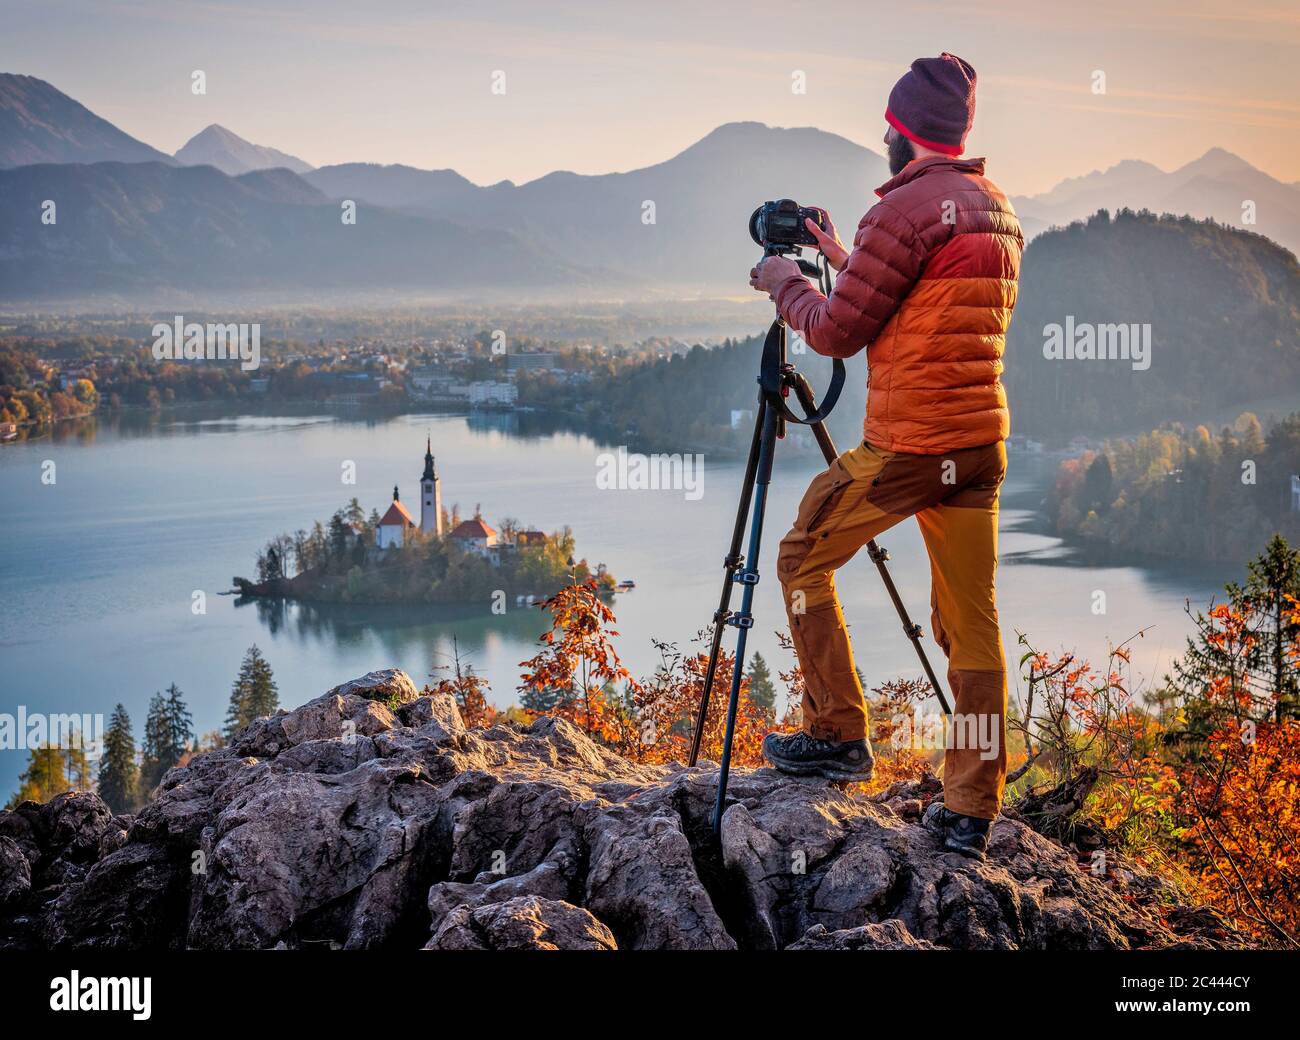 Slowenien, Oberkrain, Bled, der Mensch fotografiert die Insel Bled und die Wallfahrtskirche Mariä Himmelfahrt bei nebliger Morgendämmerung Stockfoto